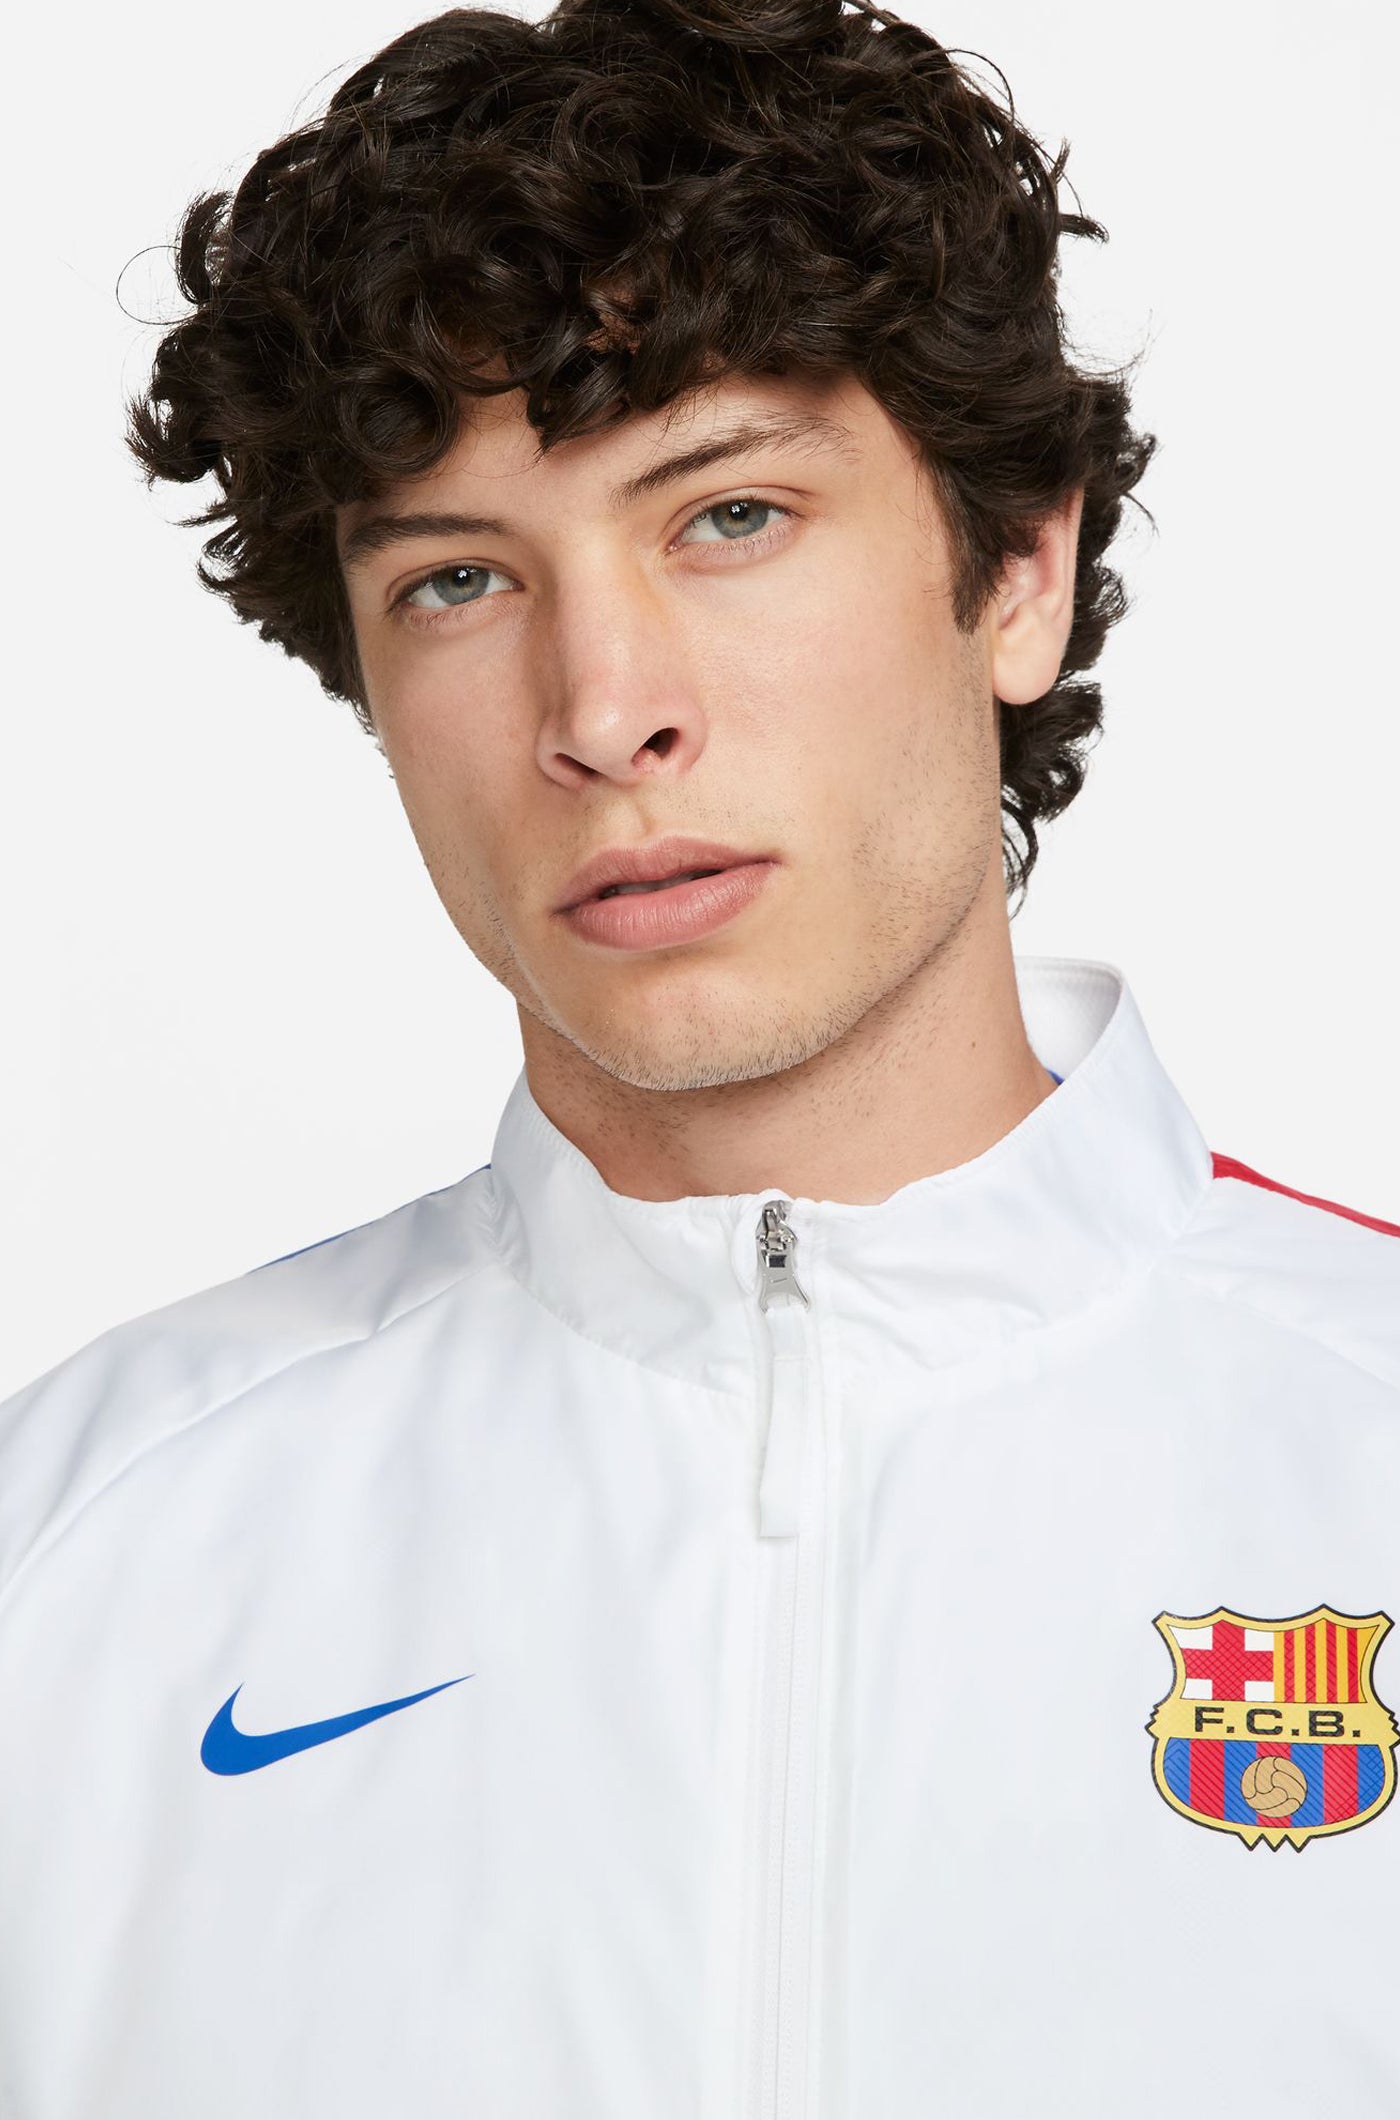 Barcelona Jacket For Adults And Kids, Licensed FC Barcelona Track Jacket  (M) - Walmart.com